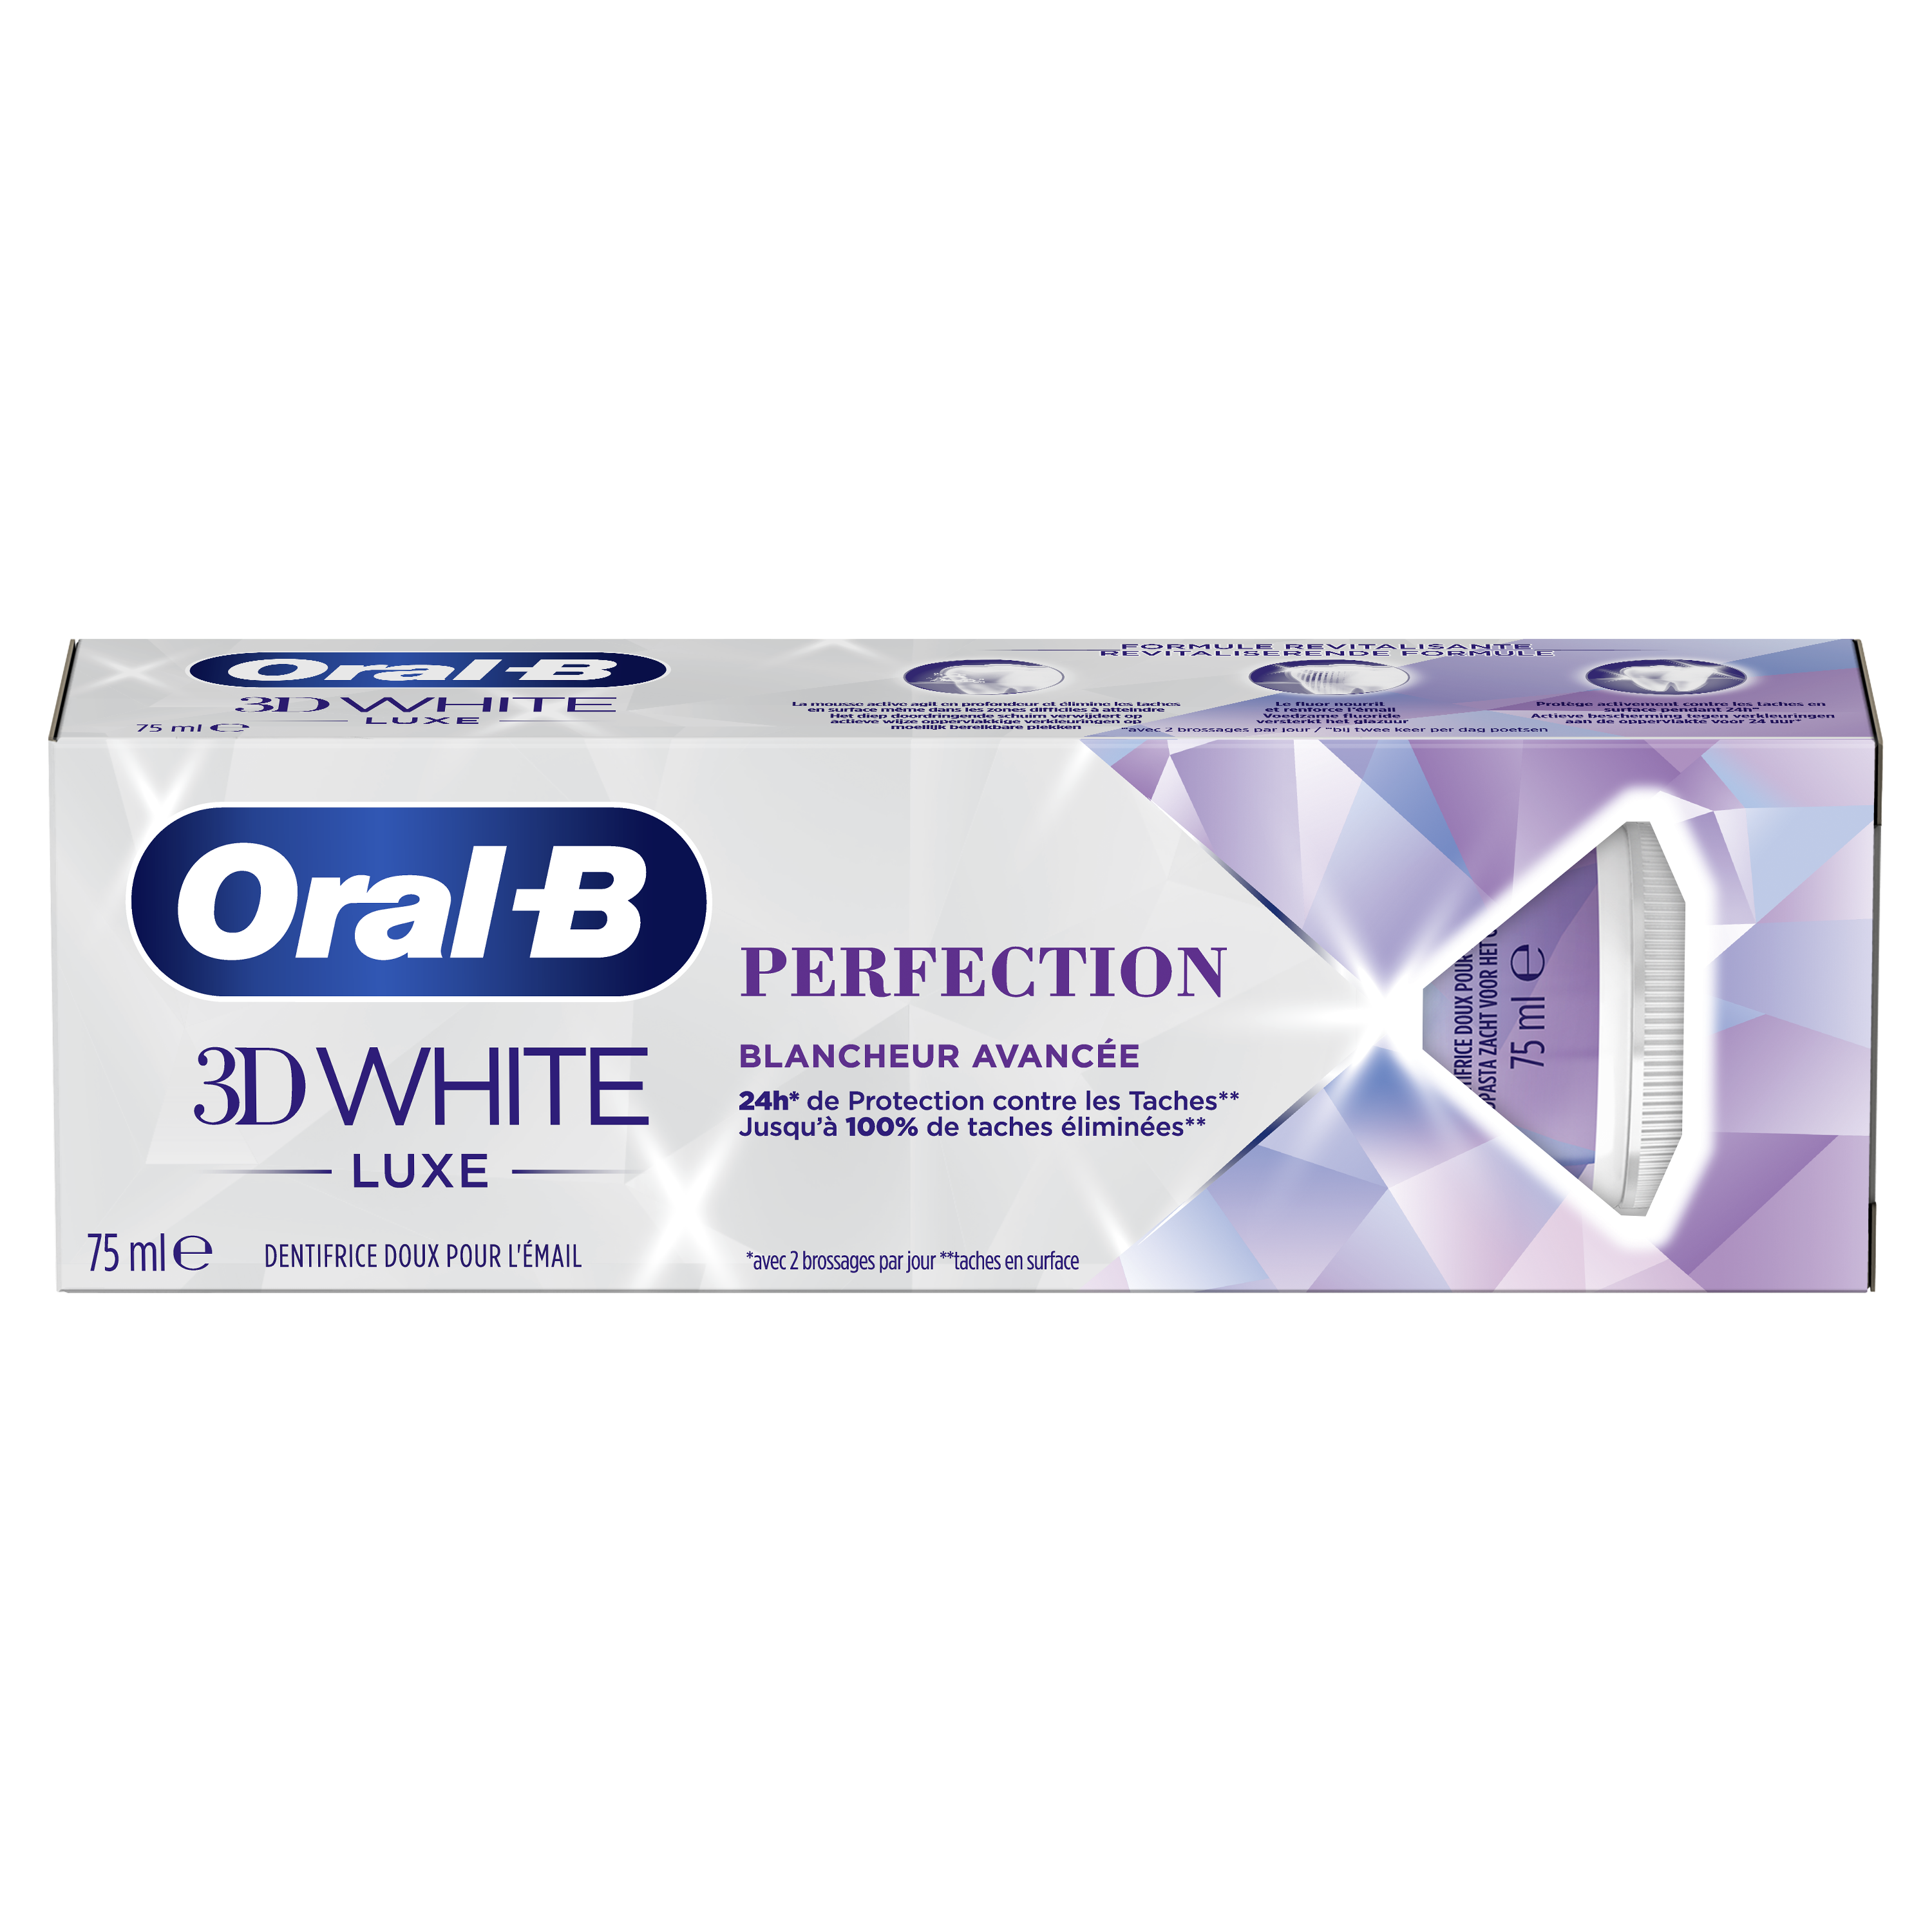 Image Product – Dentifrices et bains de bouche pour enfants - 3D White - Oral-B 3D White Luxe Perfection dentifrice - FR – FR undefined